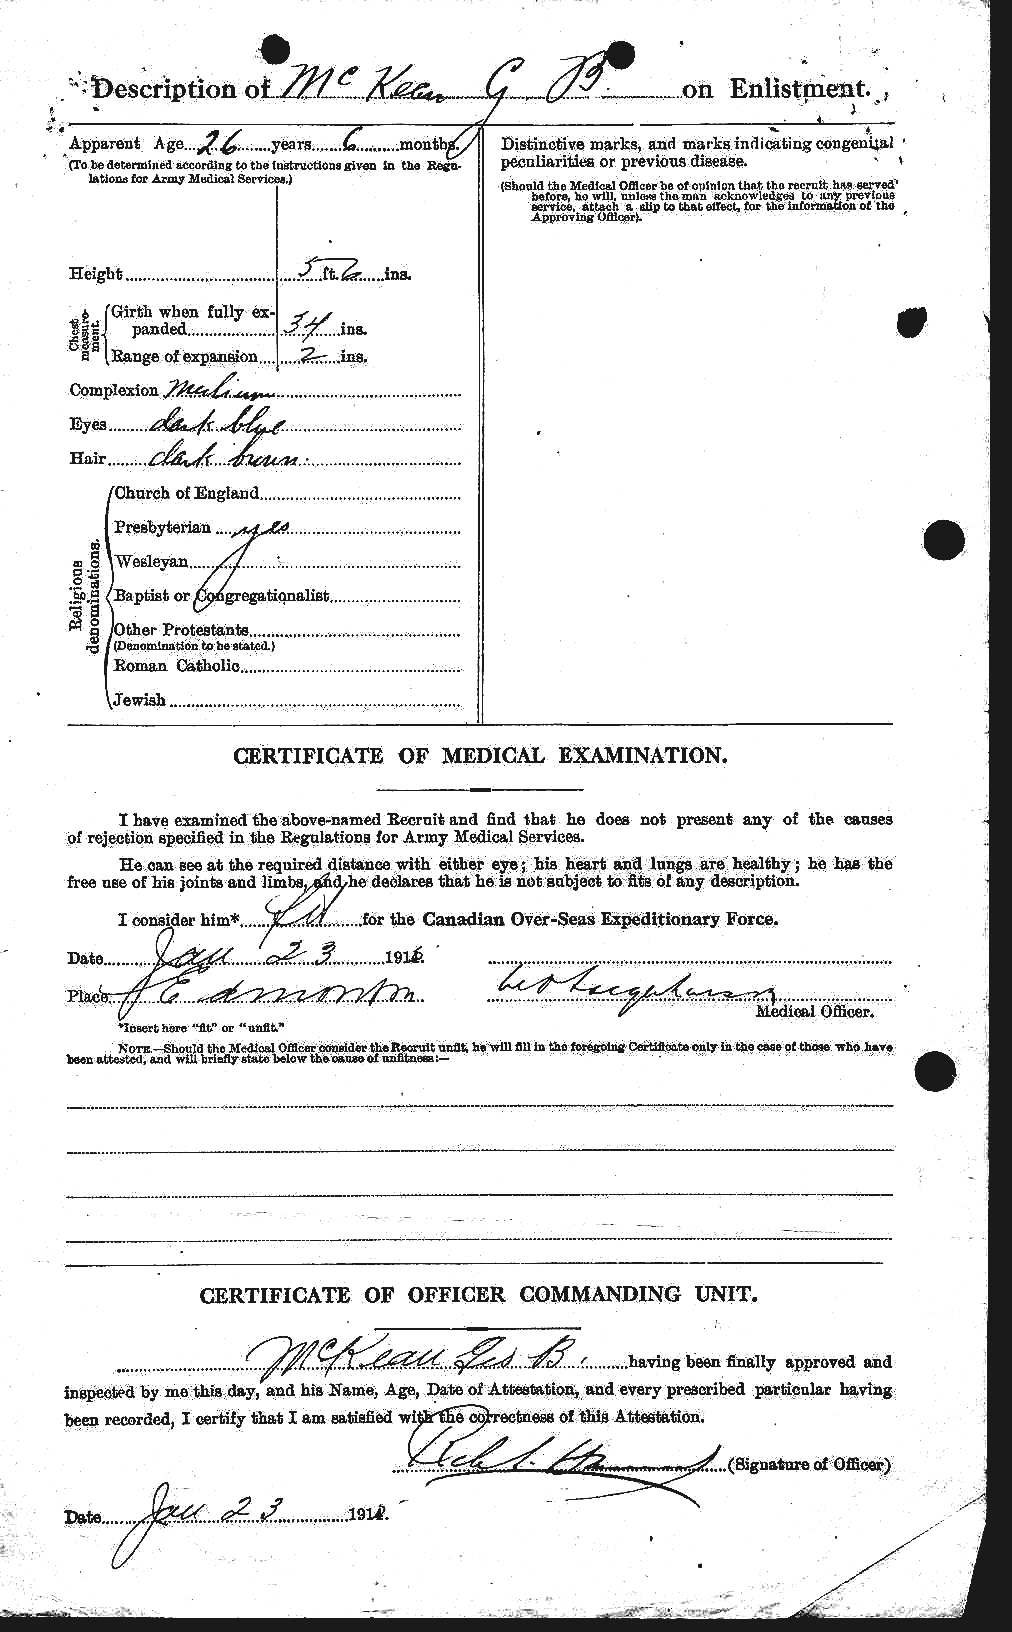 Dossiers du Personnel de la Première Guerre mondiale - CEC 530360b